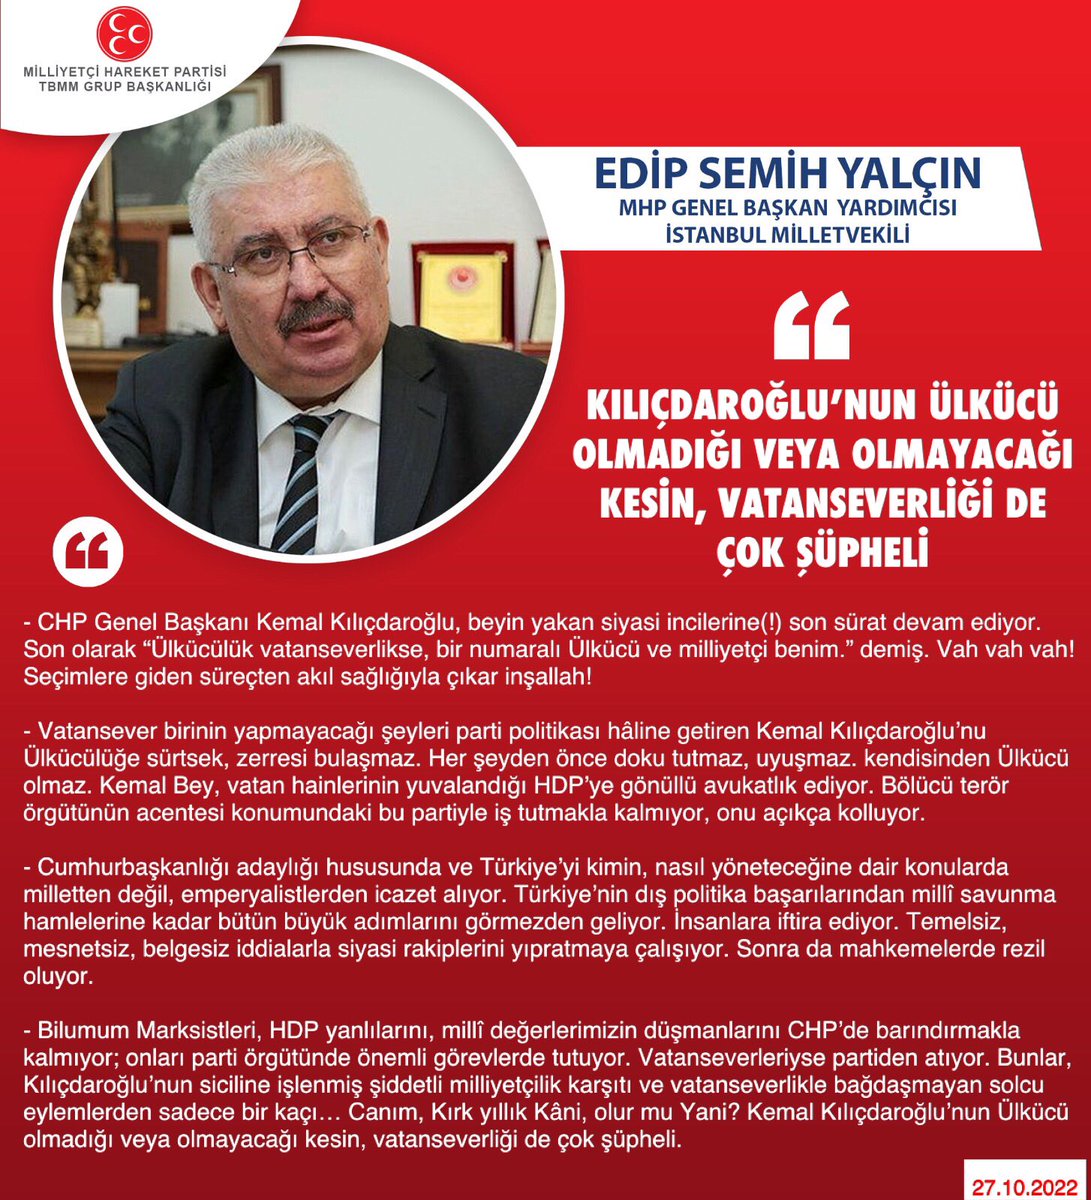 MHP Genel Başkan Yardımcısı ve İstanbul Milletvekilimiz Prof. Dr. E. Semih YALÇIN @E_SemihYalcin: Kılıçdaroğlu’nun Ülkücü olmadığı veya olmayacağı kesin, vatanseverliği de çok şüpheli